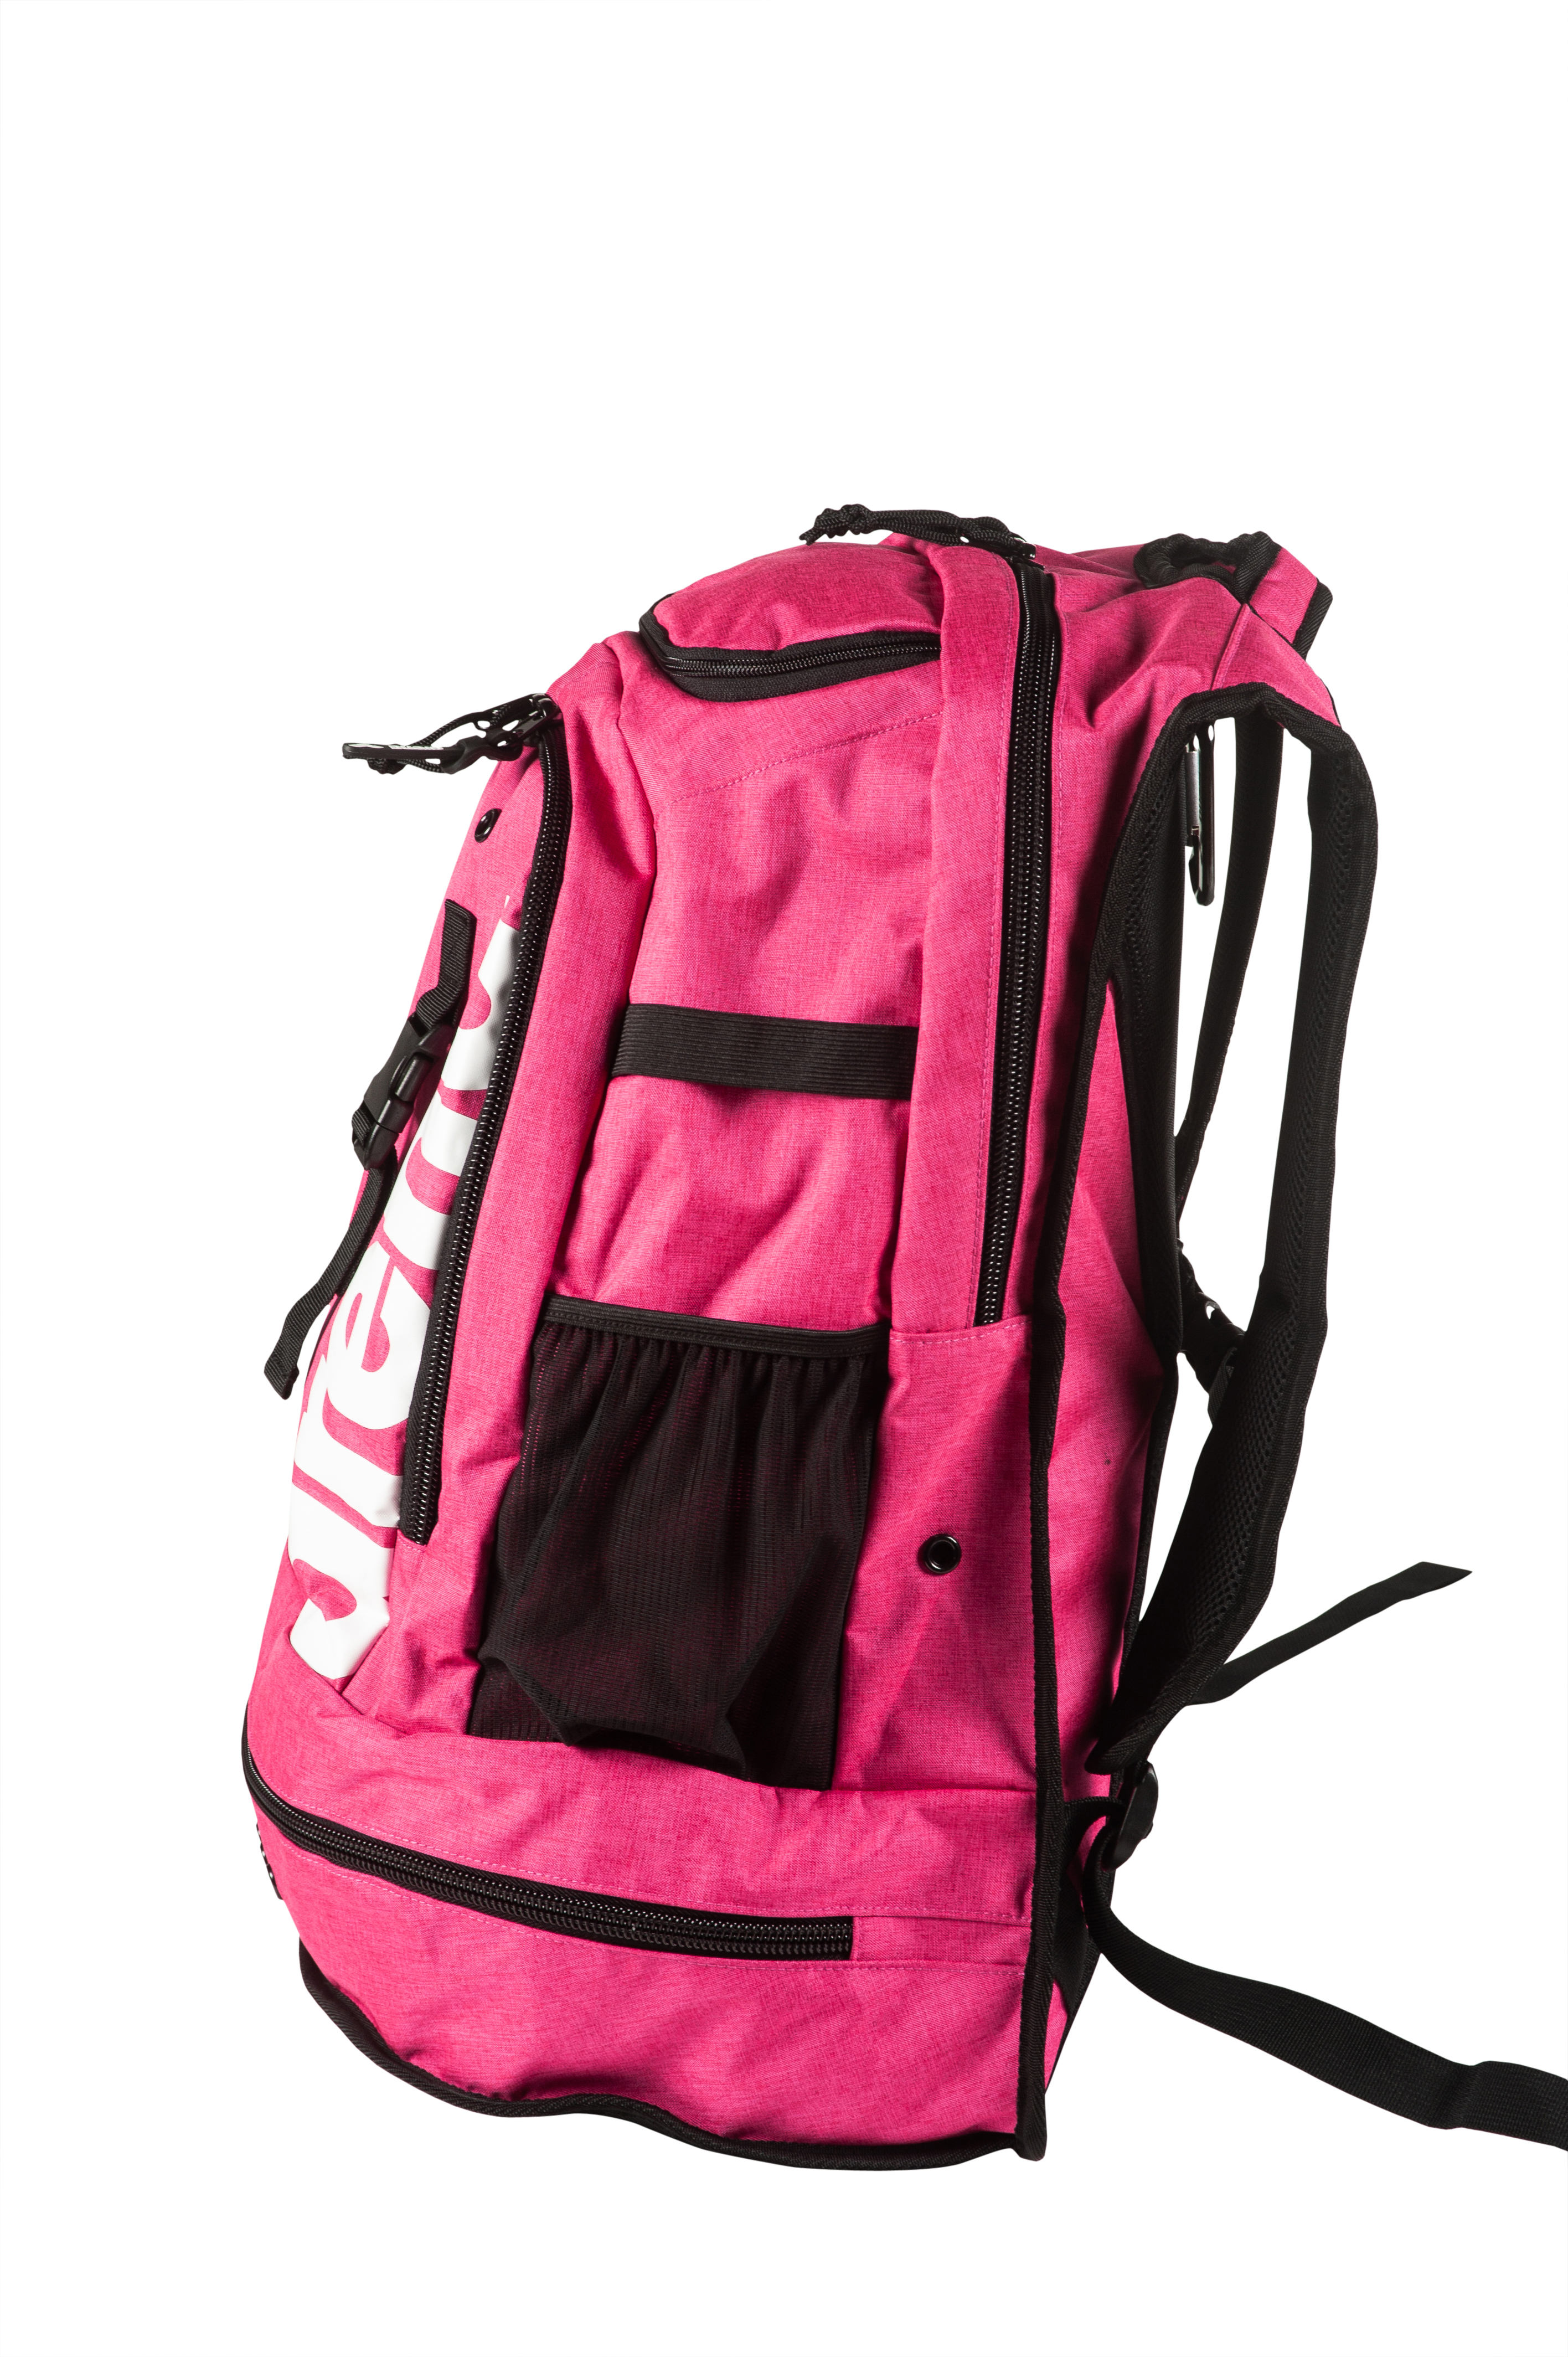 Arena Fastpack 2.2 Backpack - image 3 of 6